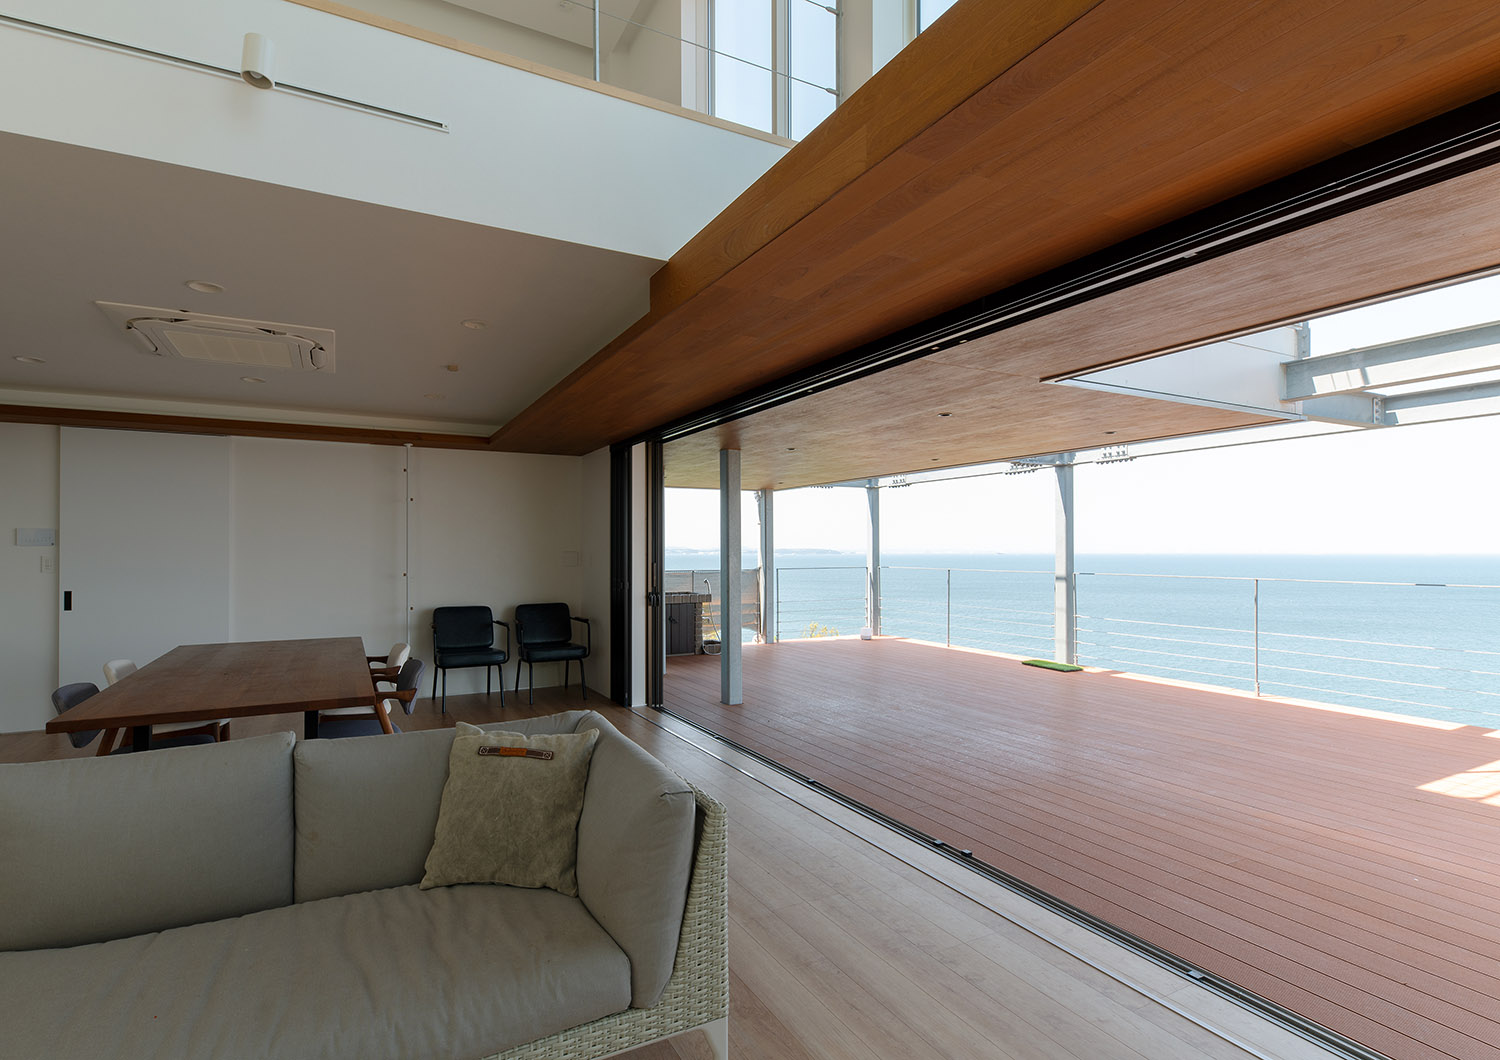 ウッドデッキのテラスから海が見渡せるリゾートホテルのような住まい・デザイン住宅